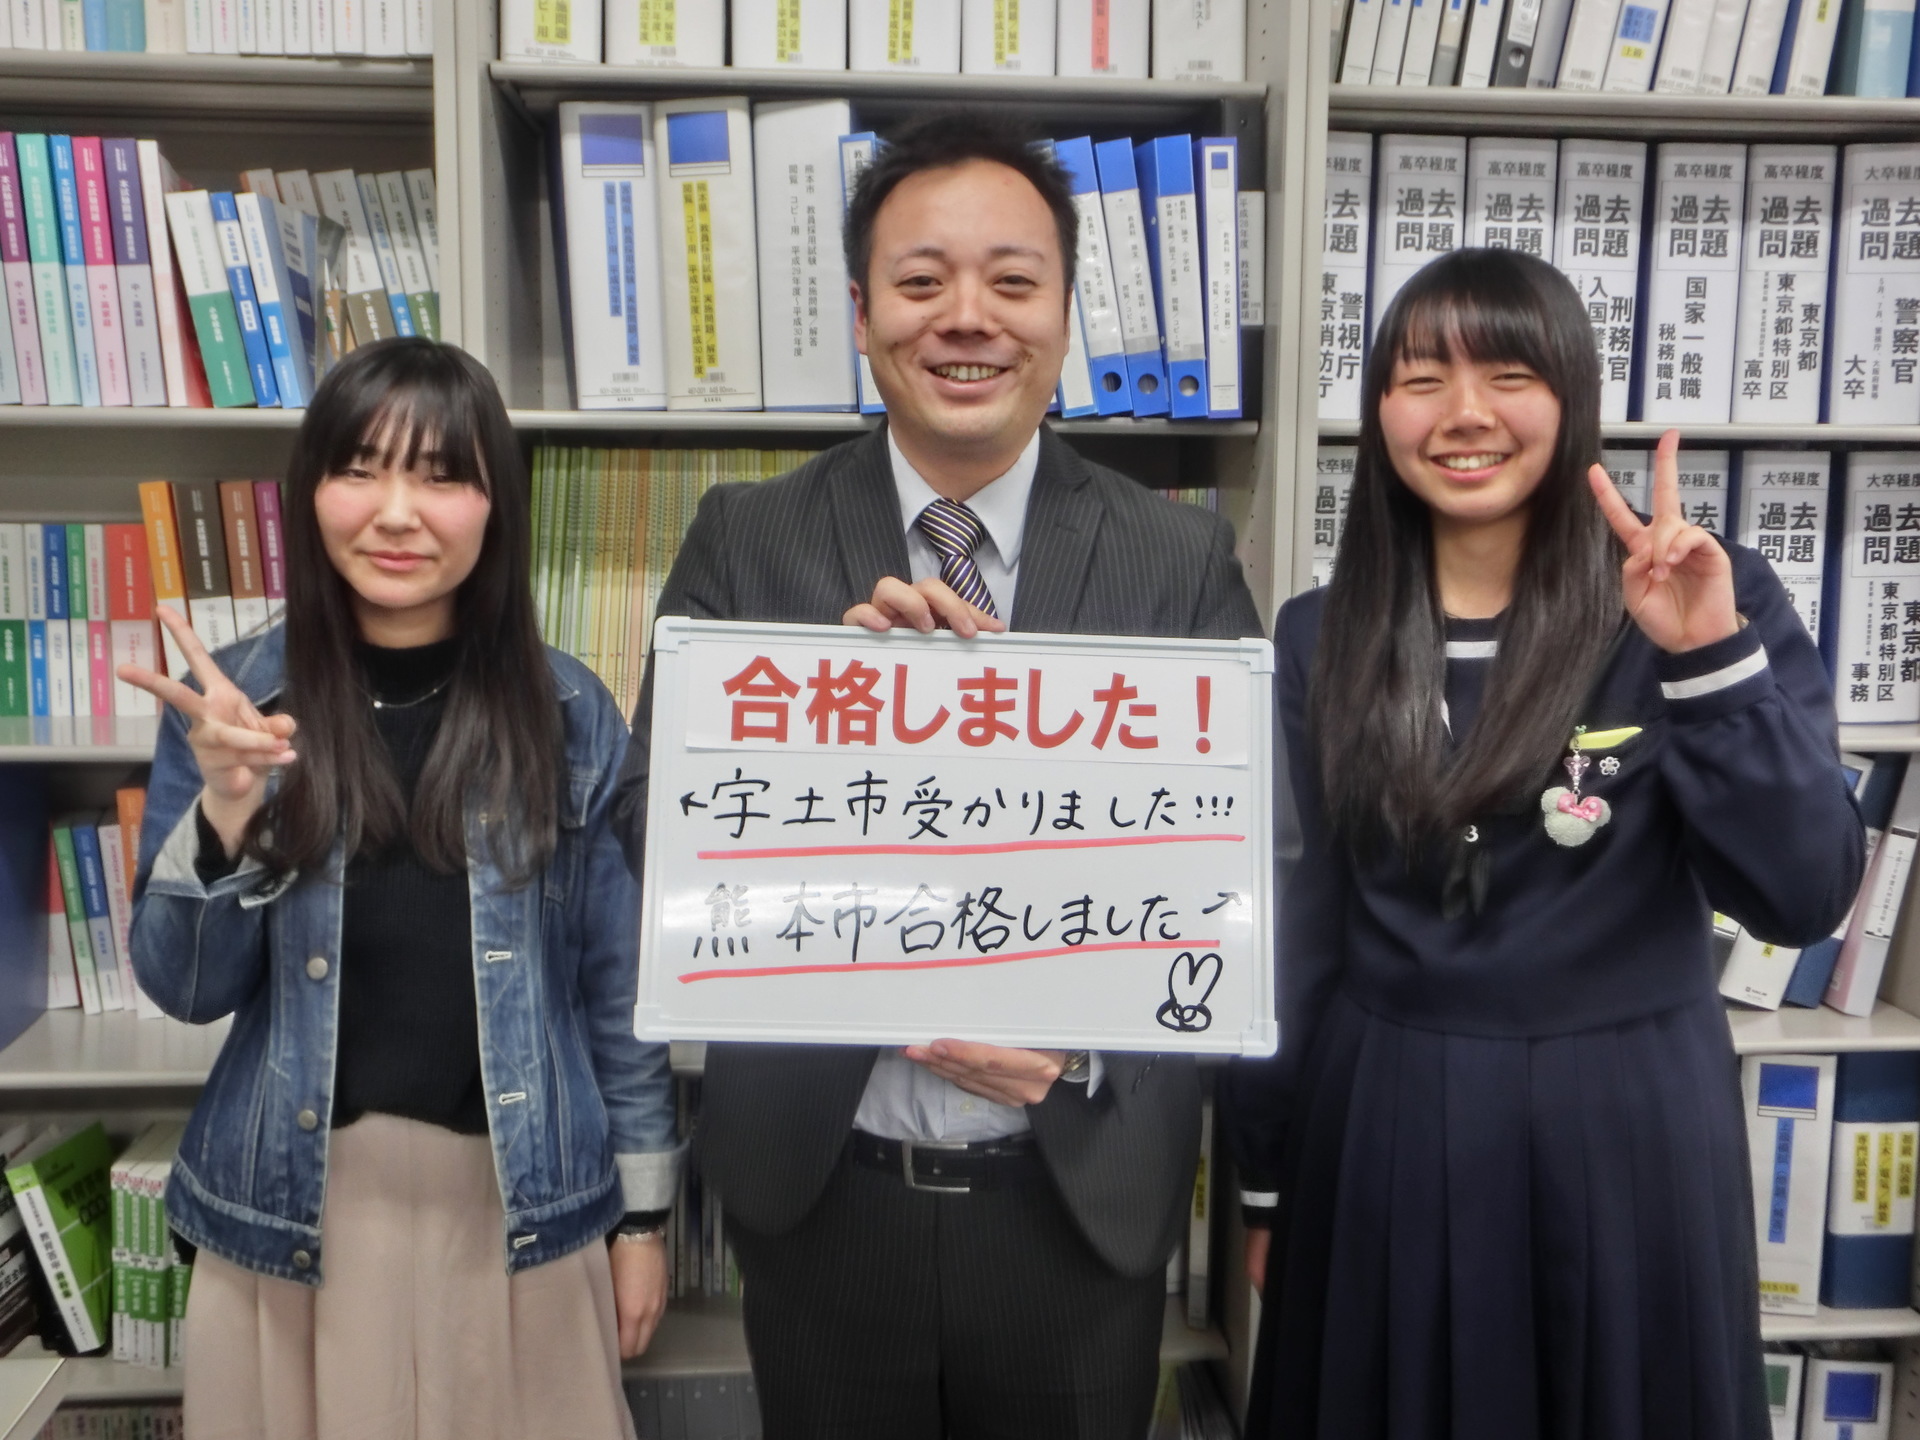 公務員試験対策 熊本市の合格発表でした 東京アカデミー熊本校 教員採用試験 看護師国家試験 公務員試験 のブログ